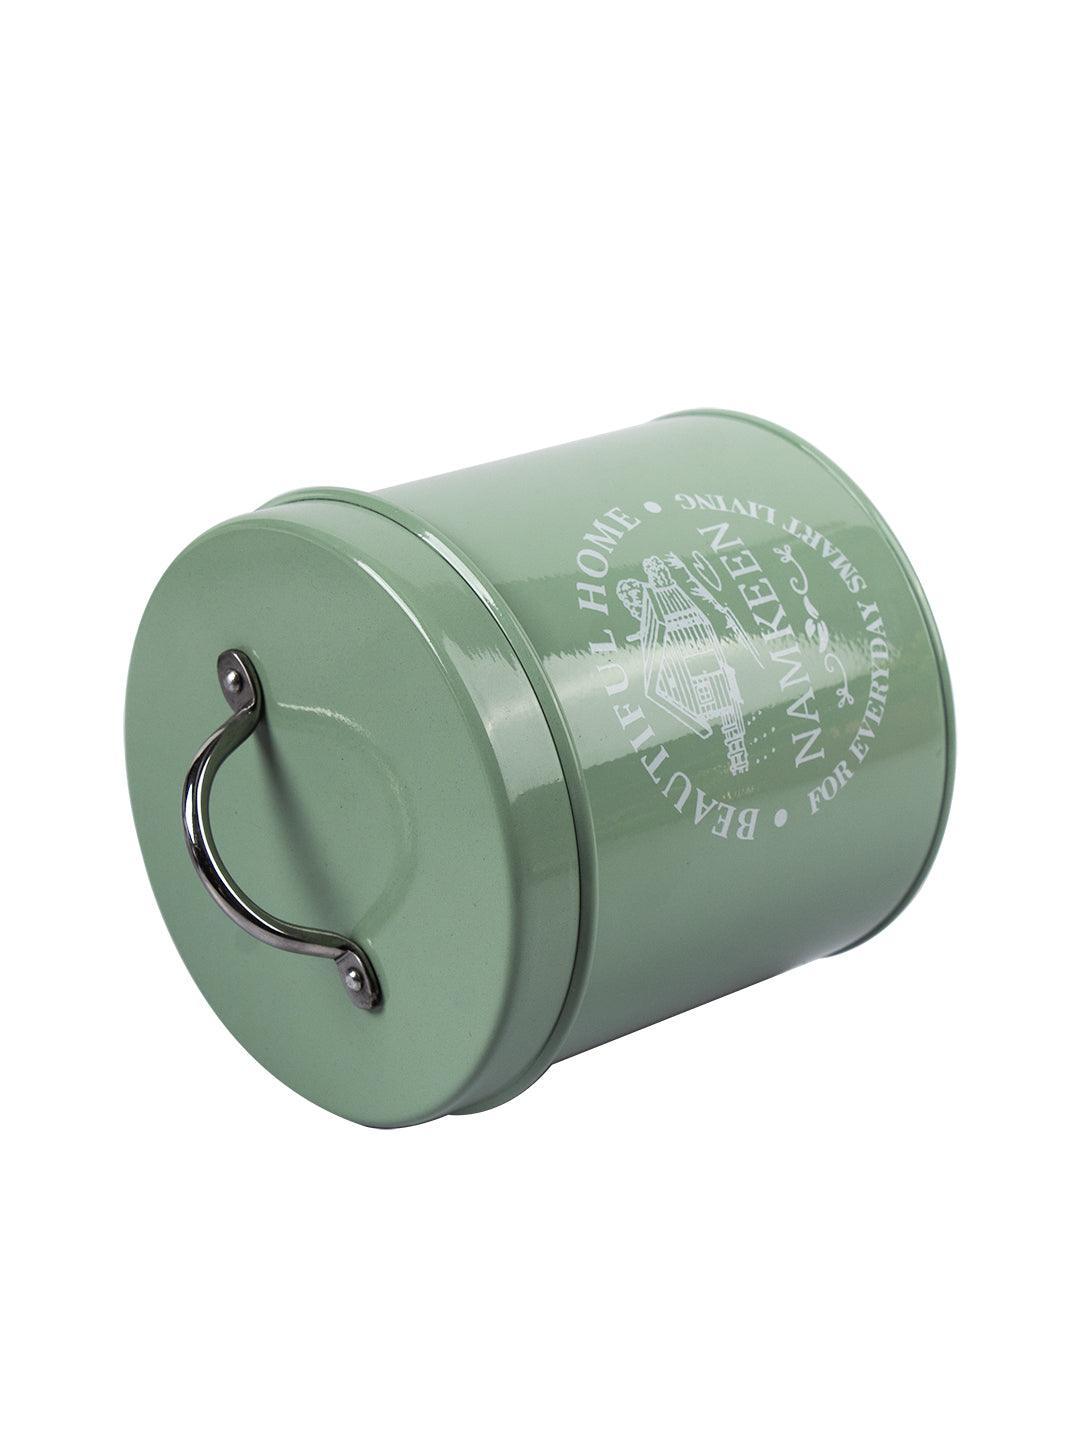 Biscuits & Namkeen Storage Jar with Lid - Set Of 2, Each 1300 mL